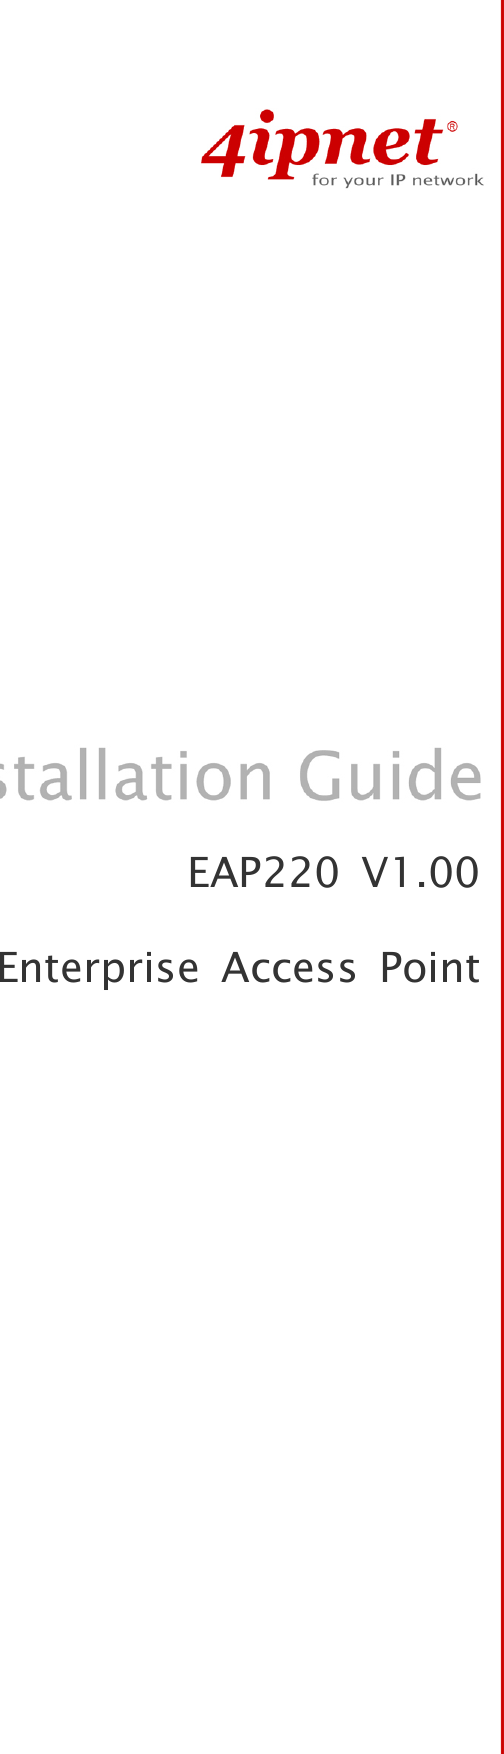   EAP220 V1.00Enterprise Access Point